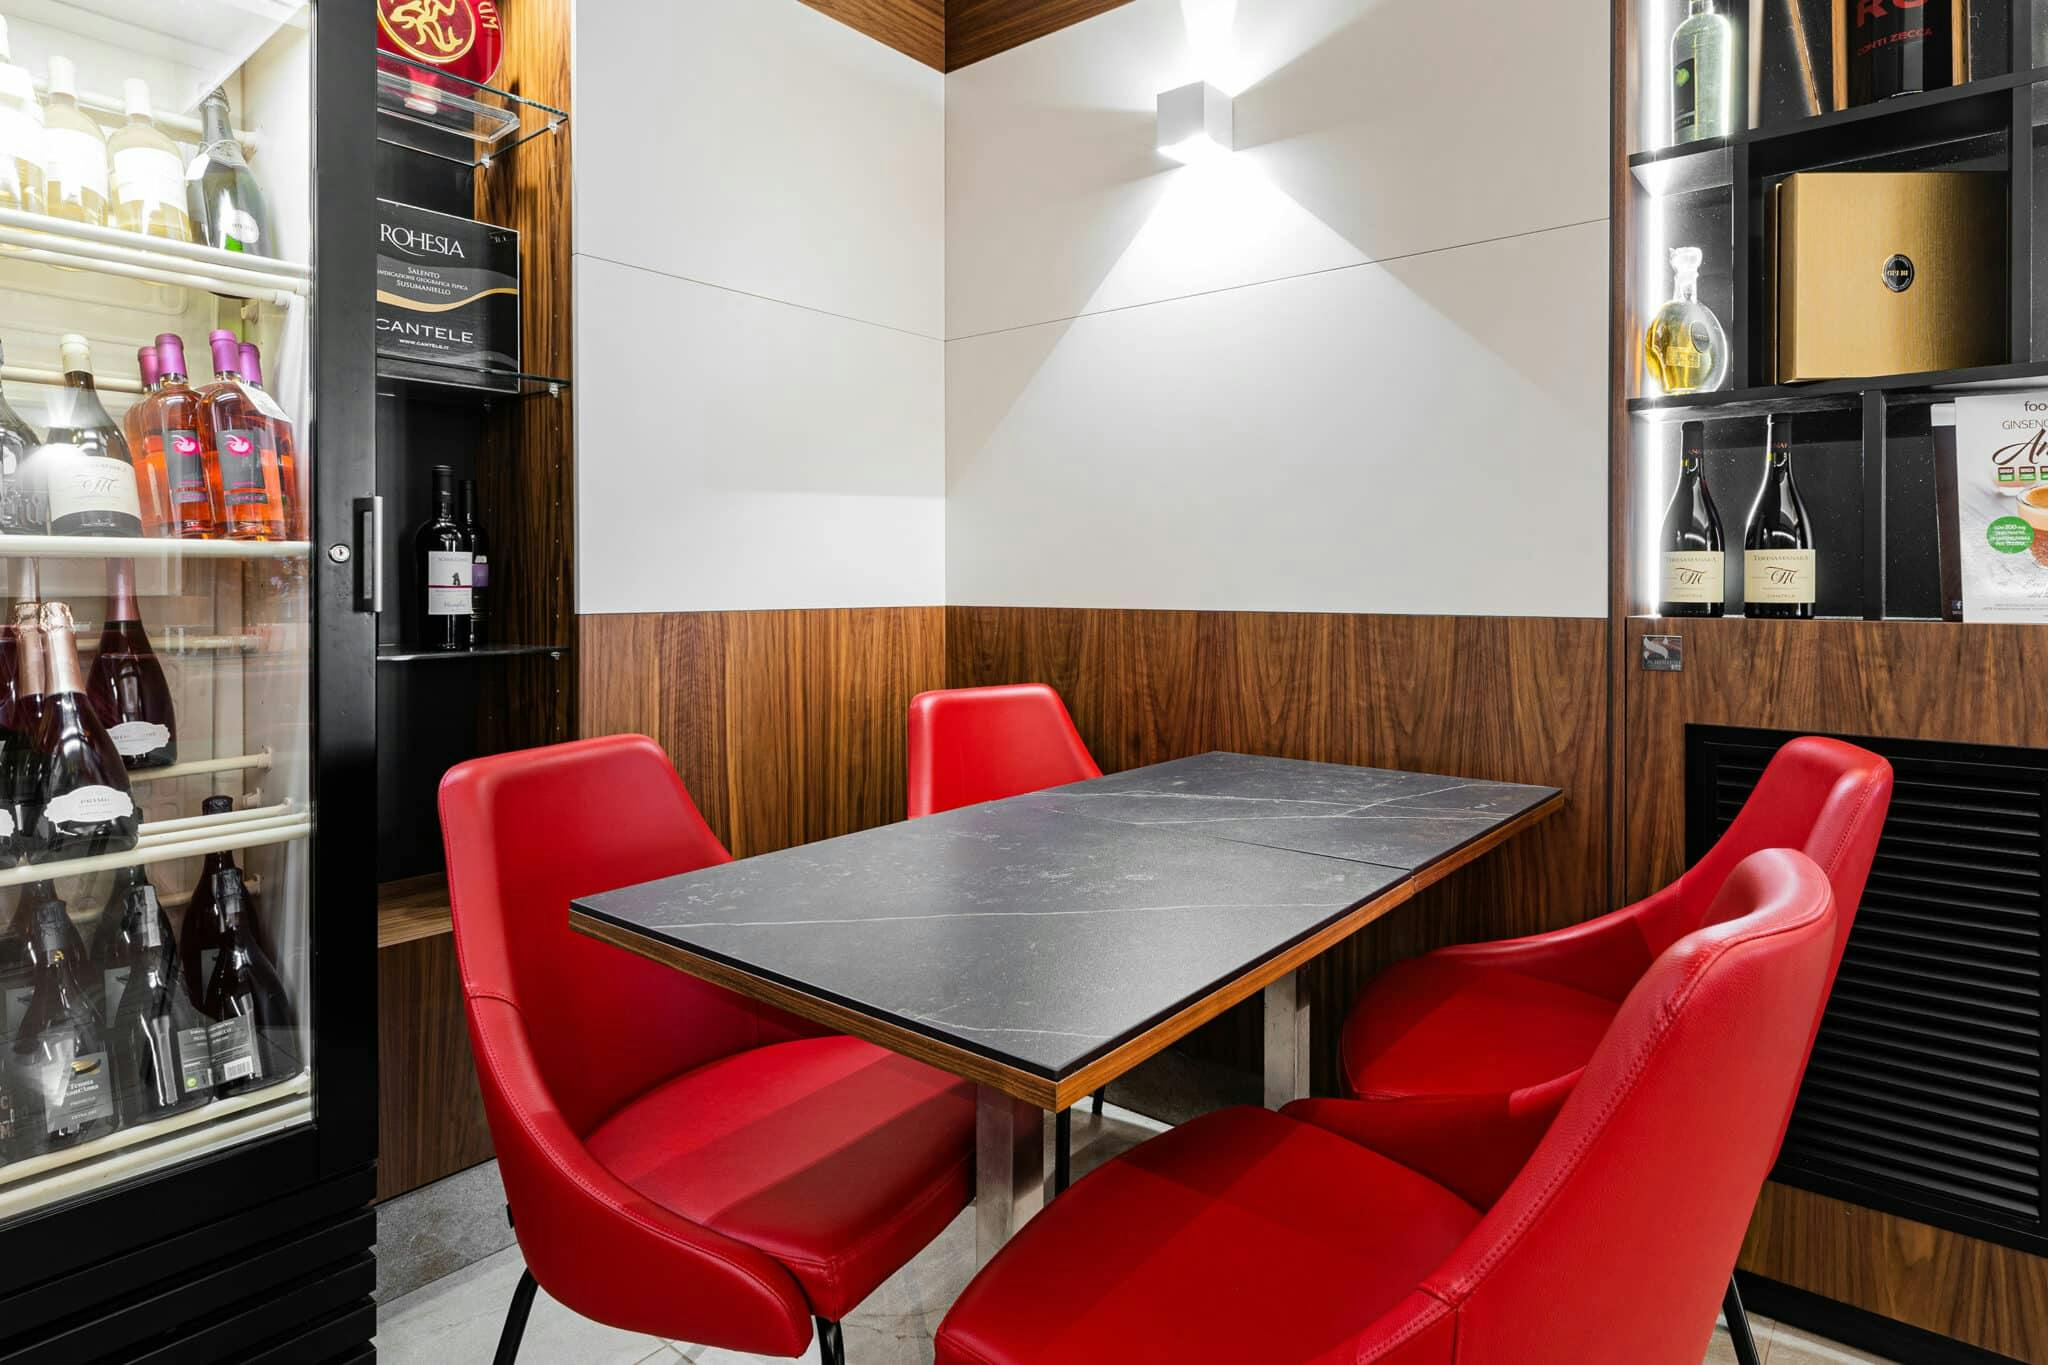 Numéro d'image 42 de la section actuelle de A rustic and cozy bar area for Pearl’s Place Restaurant & Pantry de Cosentino France